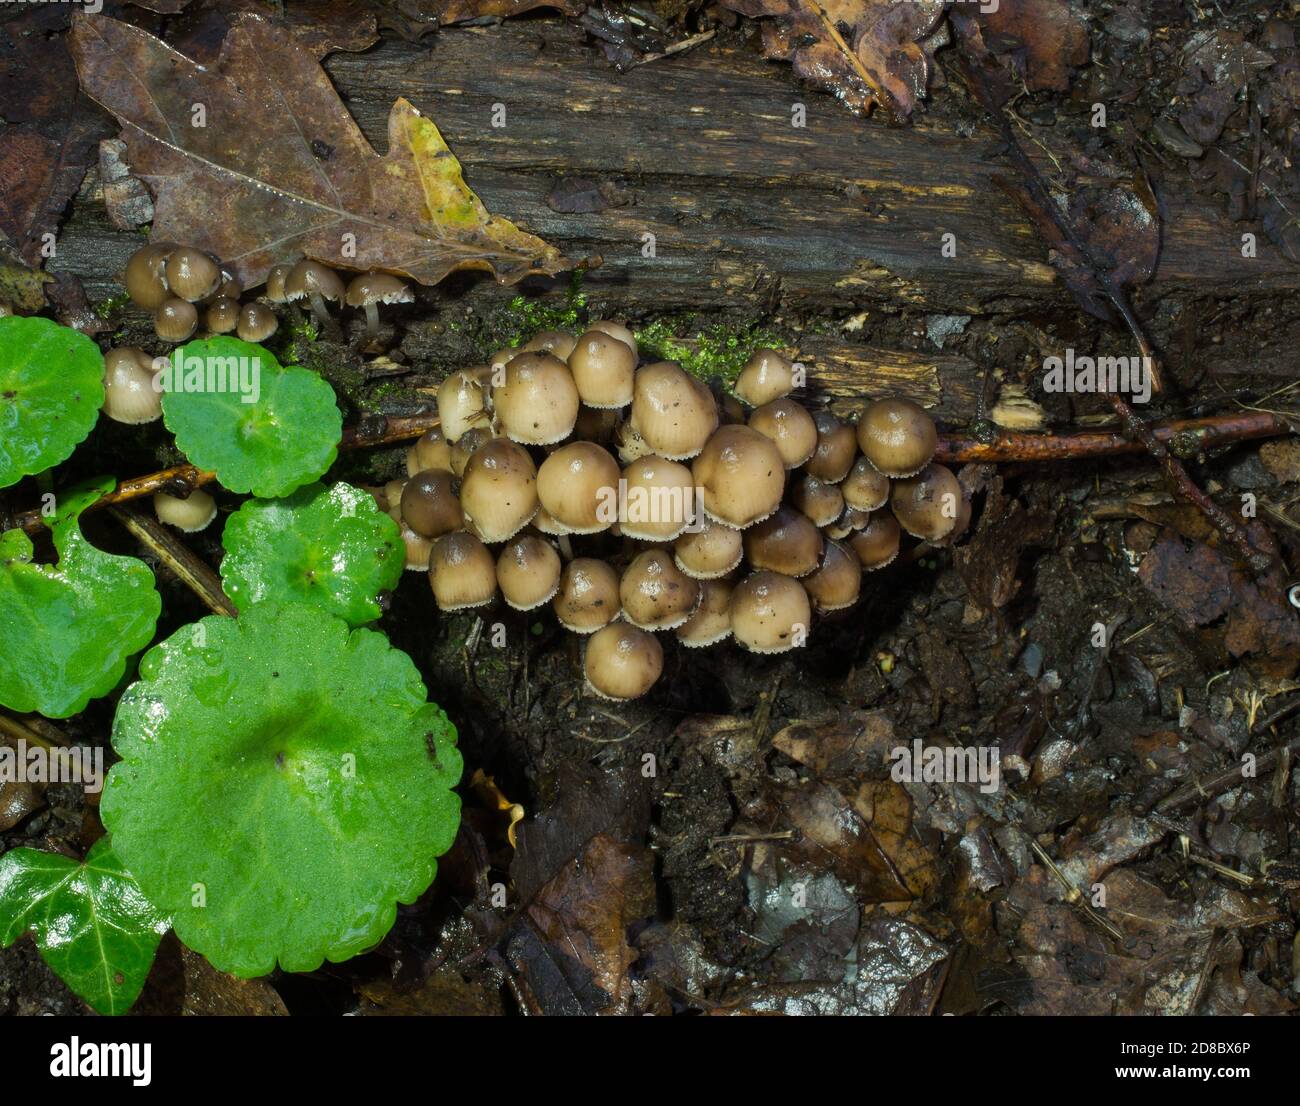 Un des champignons du groupe Psathyrella, probablement Psathyrella piliformis pousse à la base d'un arbre parmi la litière de feuilles humides. Banque D'Images